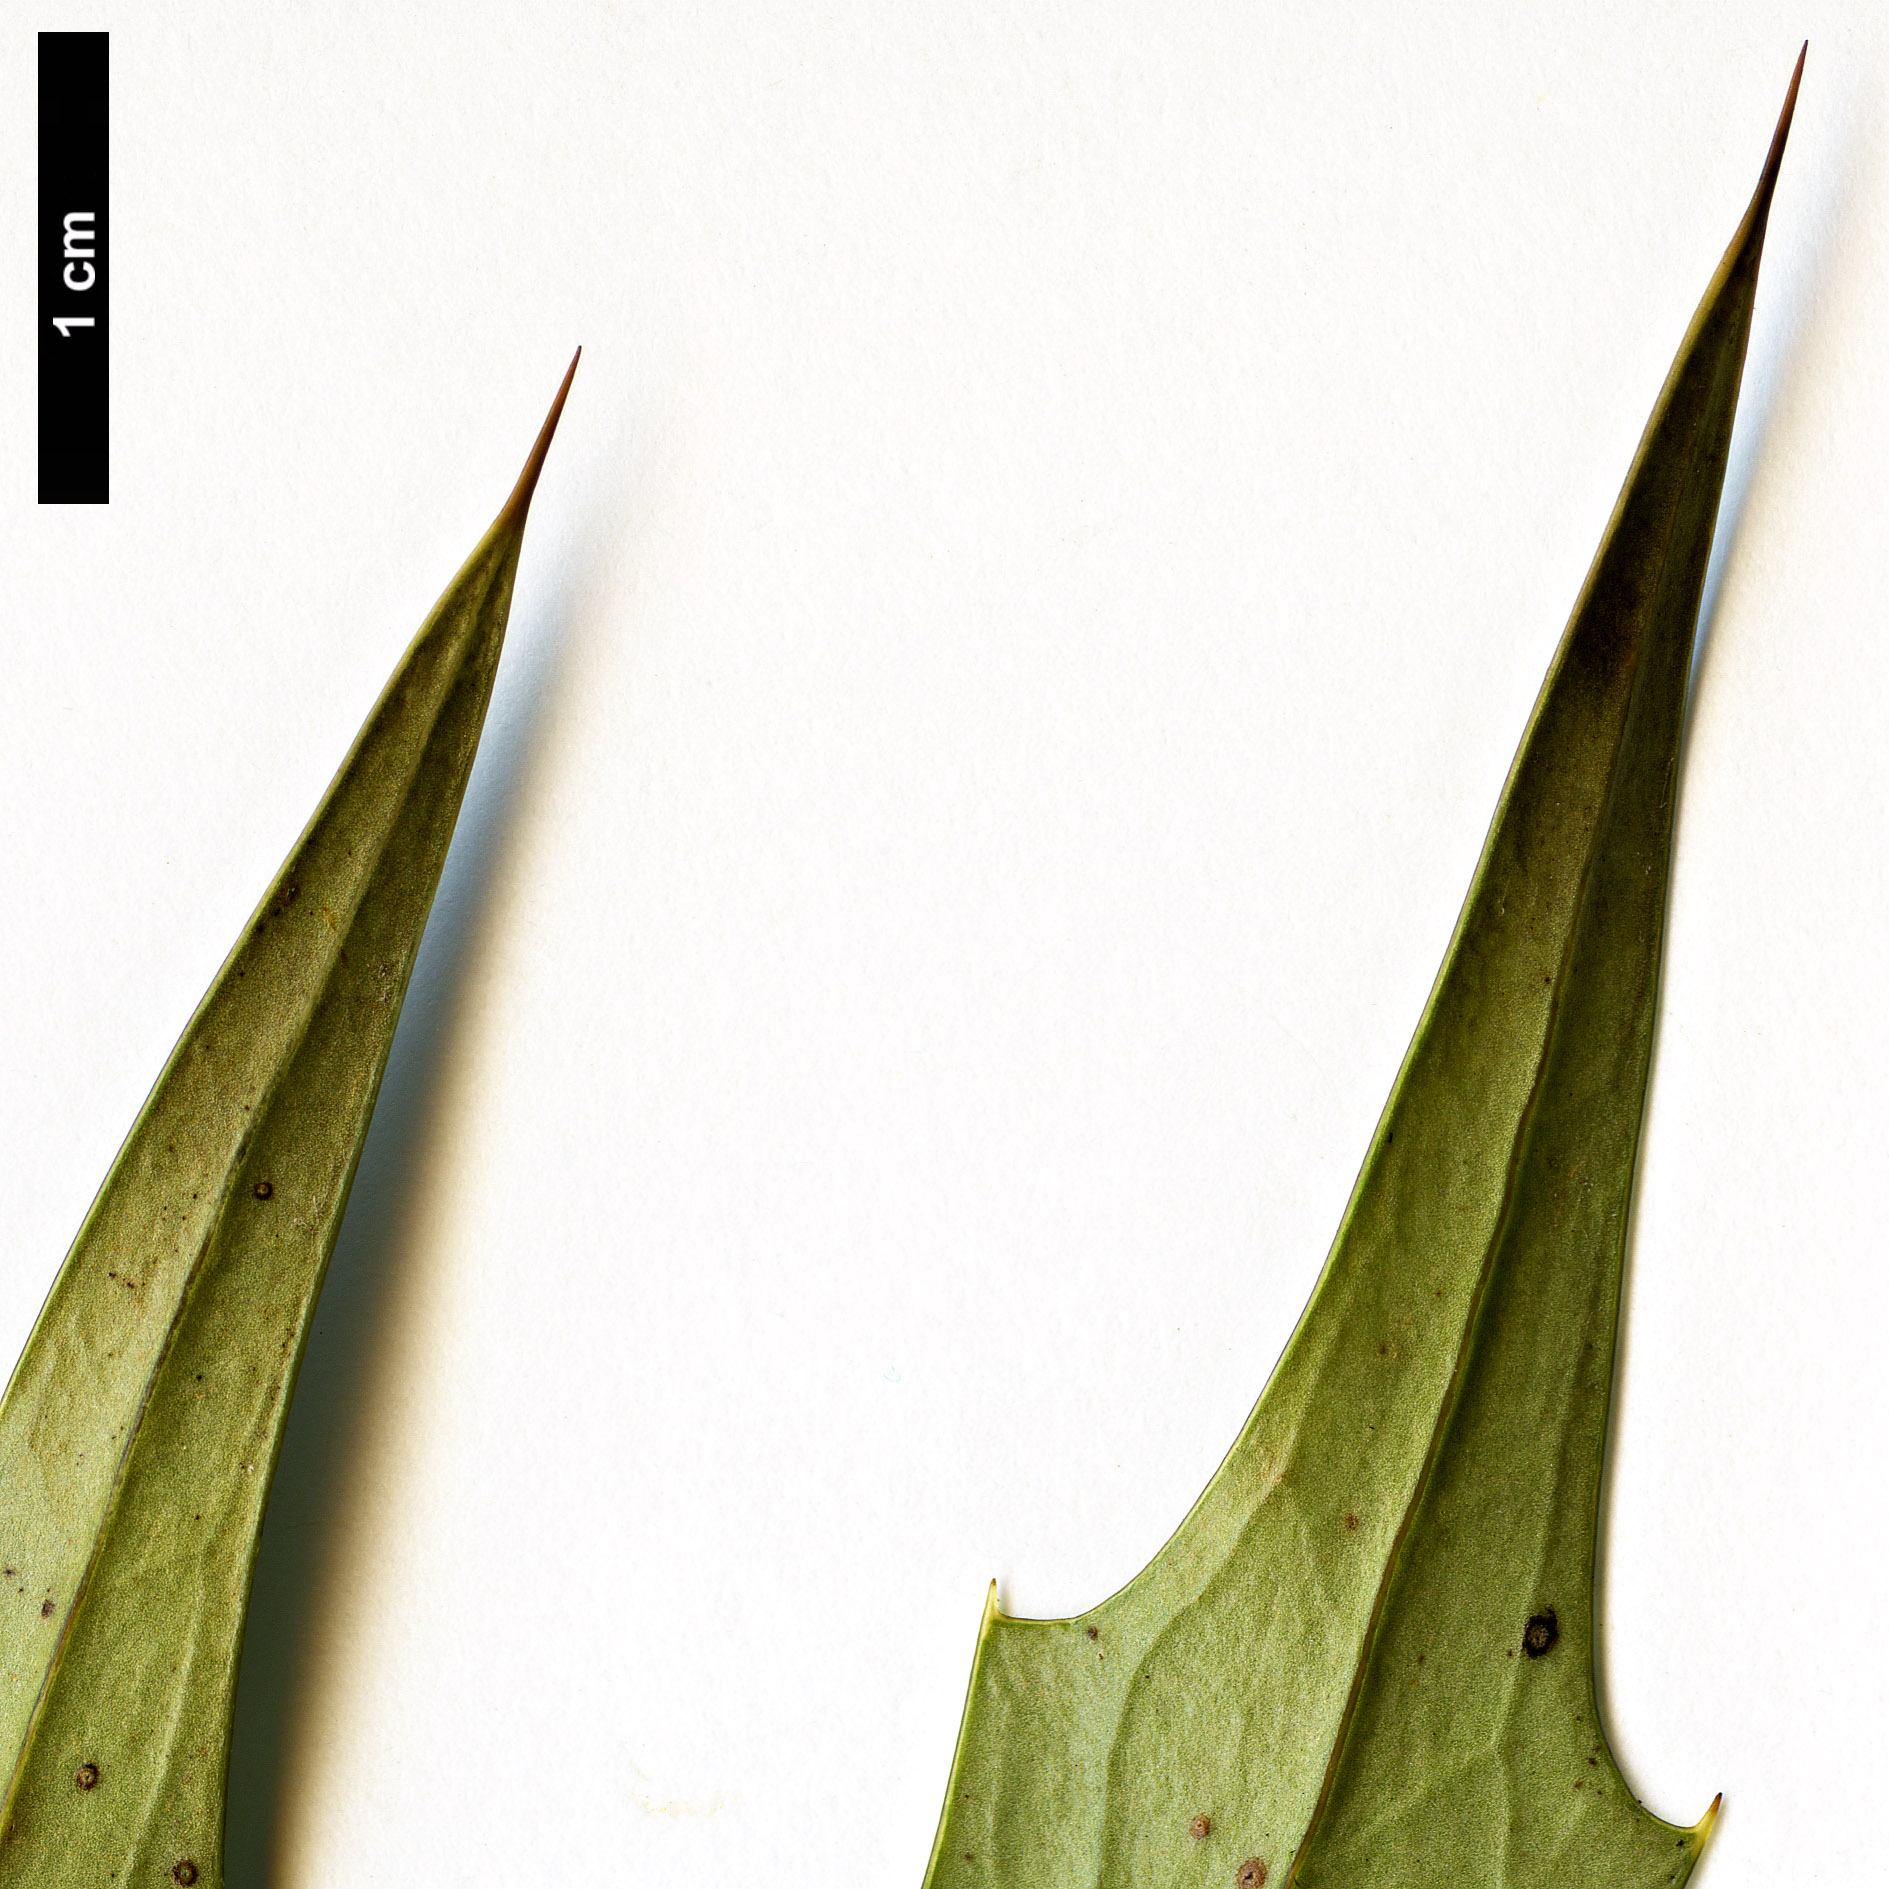 High resolution image: Family: Berberidaceae - Genus: Mahonia - Taxon: huiliensis